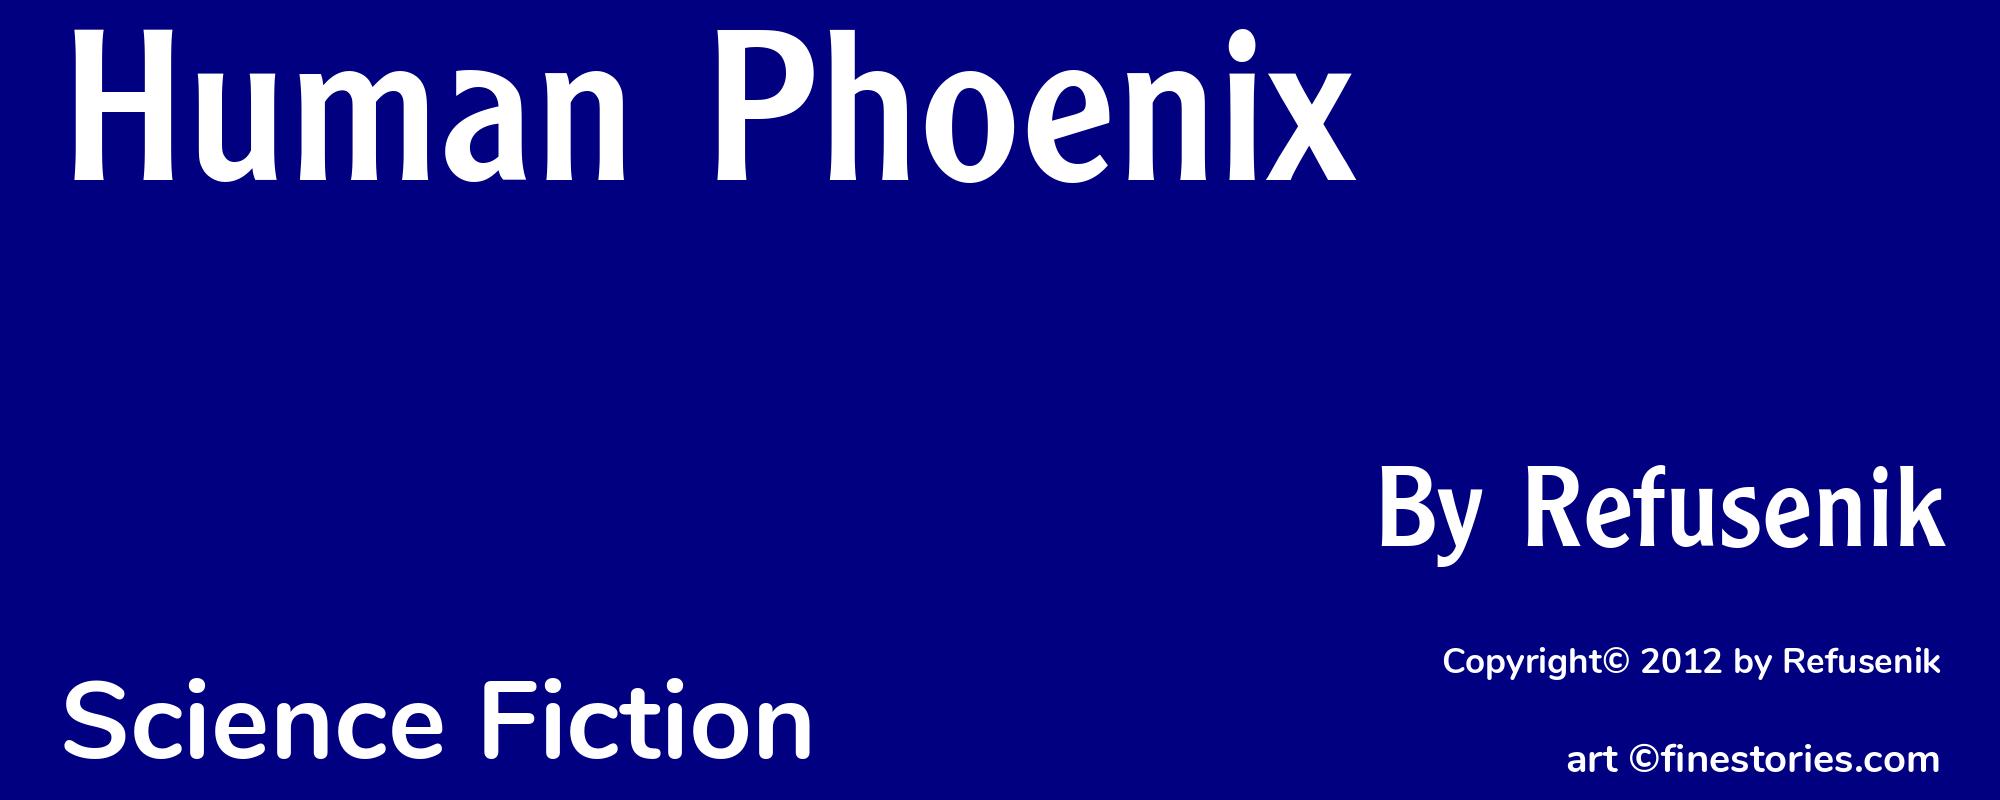 Human Phoenix - Cover